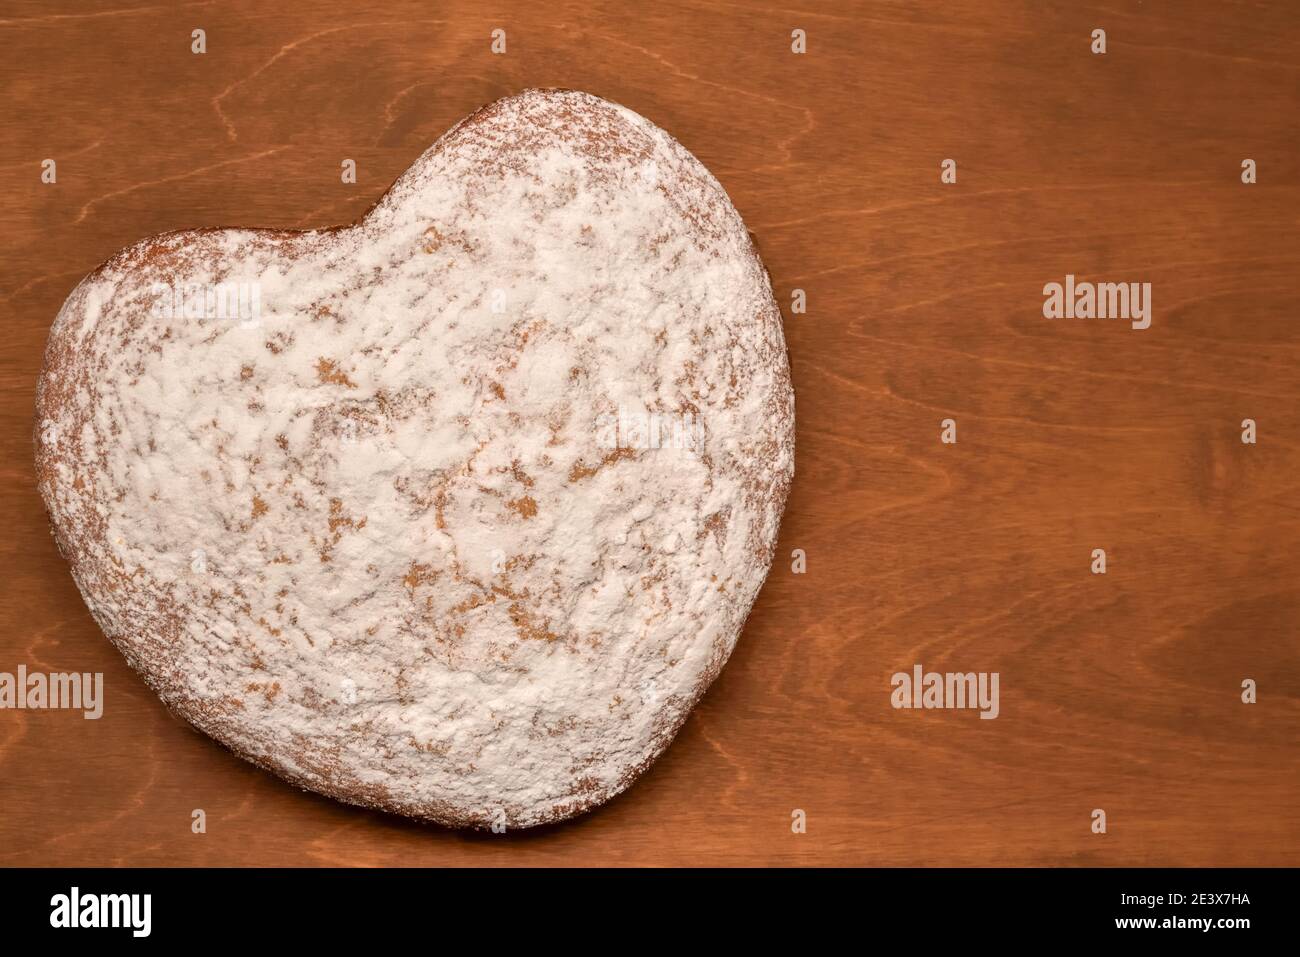 gâteau fait maison en forme de cœur, saupoudré de sucre en poudre, fraîchement cuit pour les vacances Banque D'Images